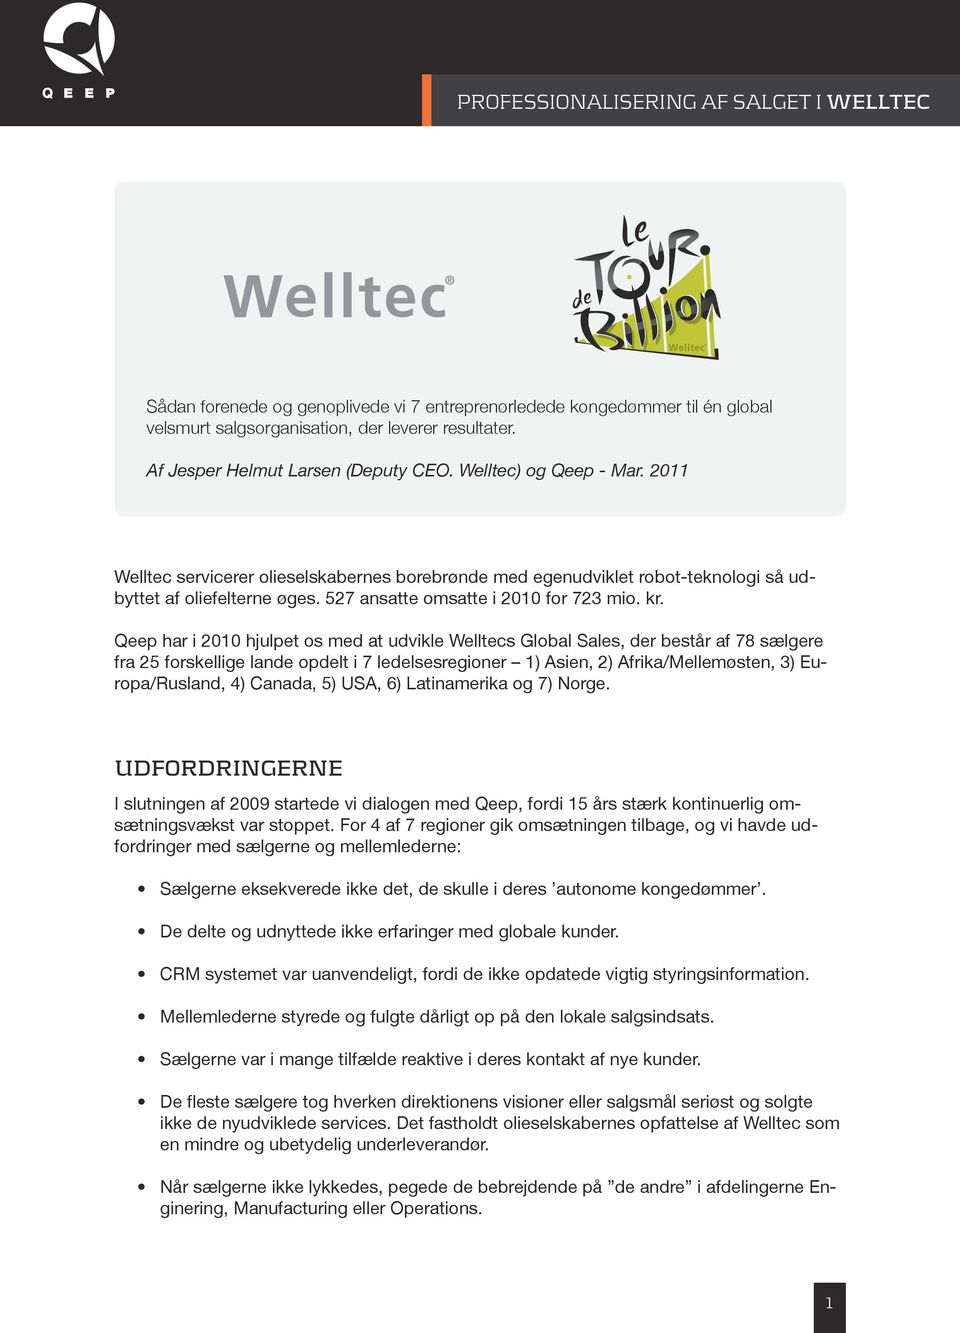 Qeep har i 2010 hjulpet os med at udvikle Welltecs Global Sales, der består af 78 sælgere fra 25 forskellige lande opdelt i 7 ledelsesregioner 1) Asien, 2) Afrika/Mellemøsten, 3) Europa/Rusland, 4)